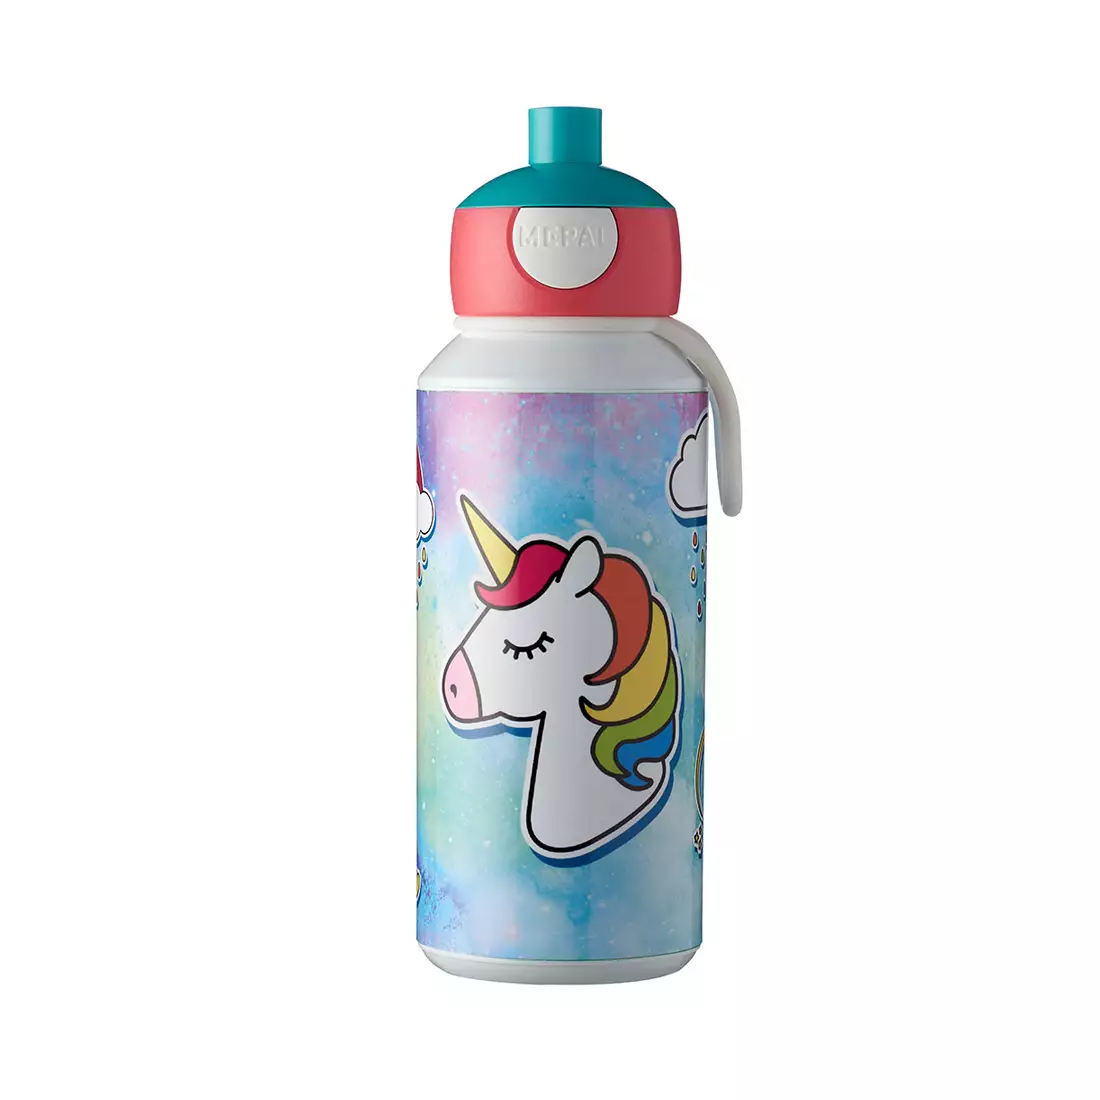 MEPAL CAMPUS POP UP water bottle for children 400ml Unicorn